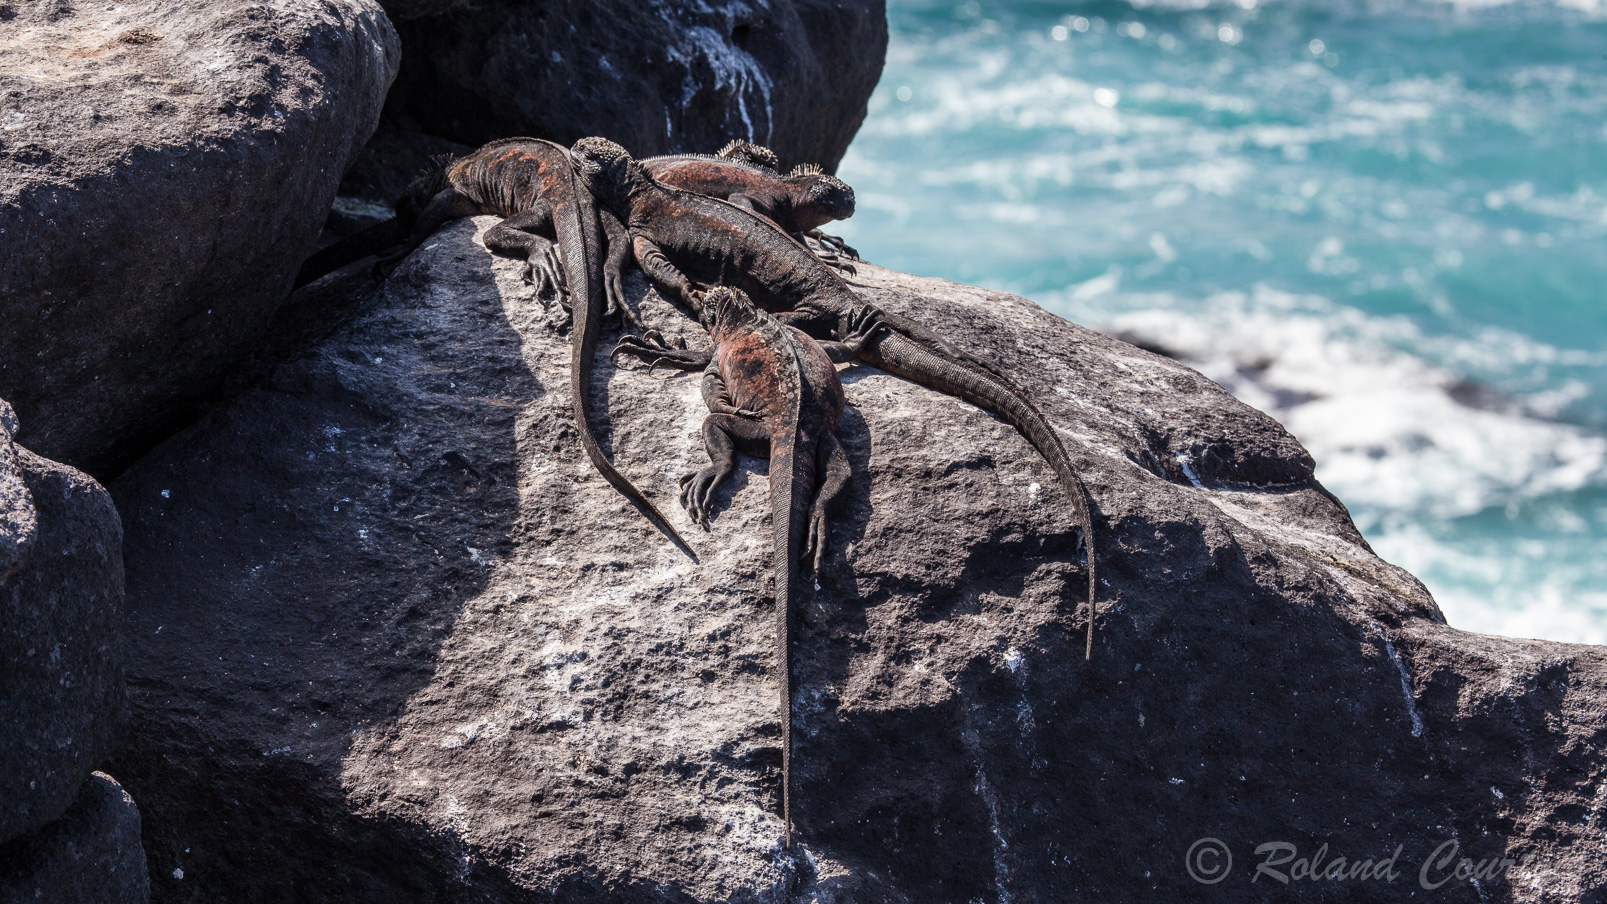 Iguanes roses des Galapagos, comme ses cousins les marins, il est également obligé de réchauffer son sang au soleil